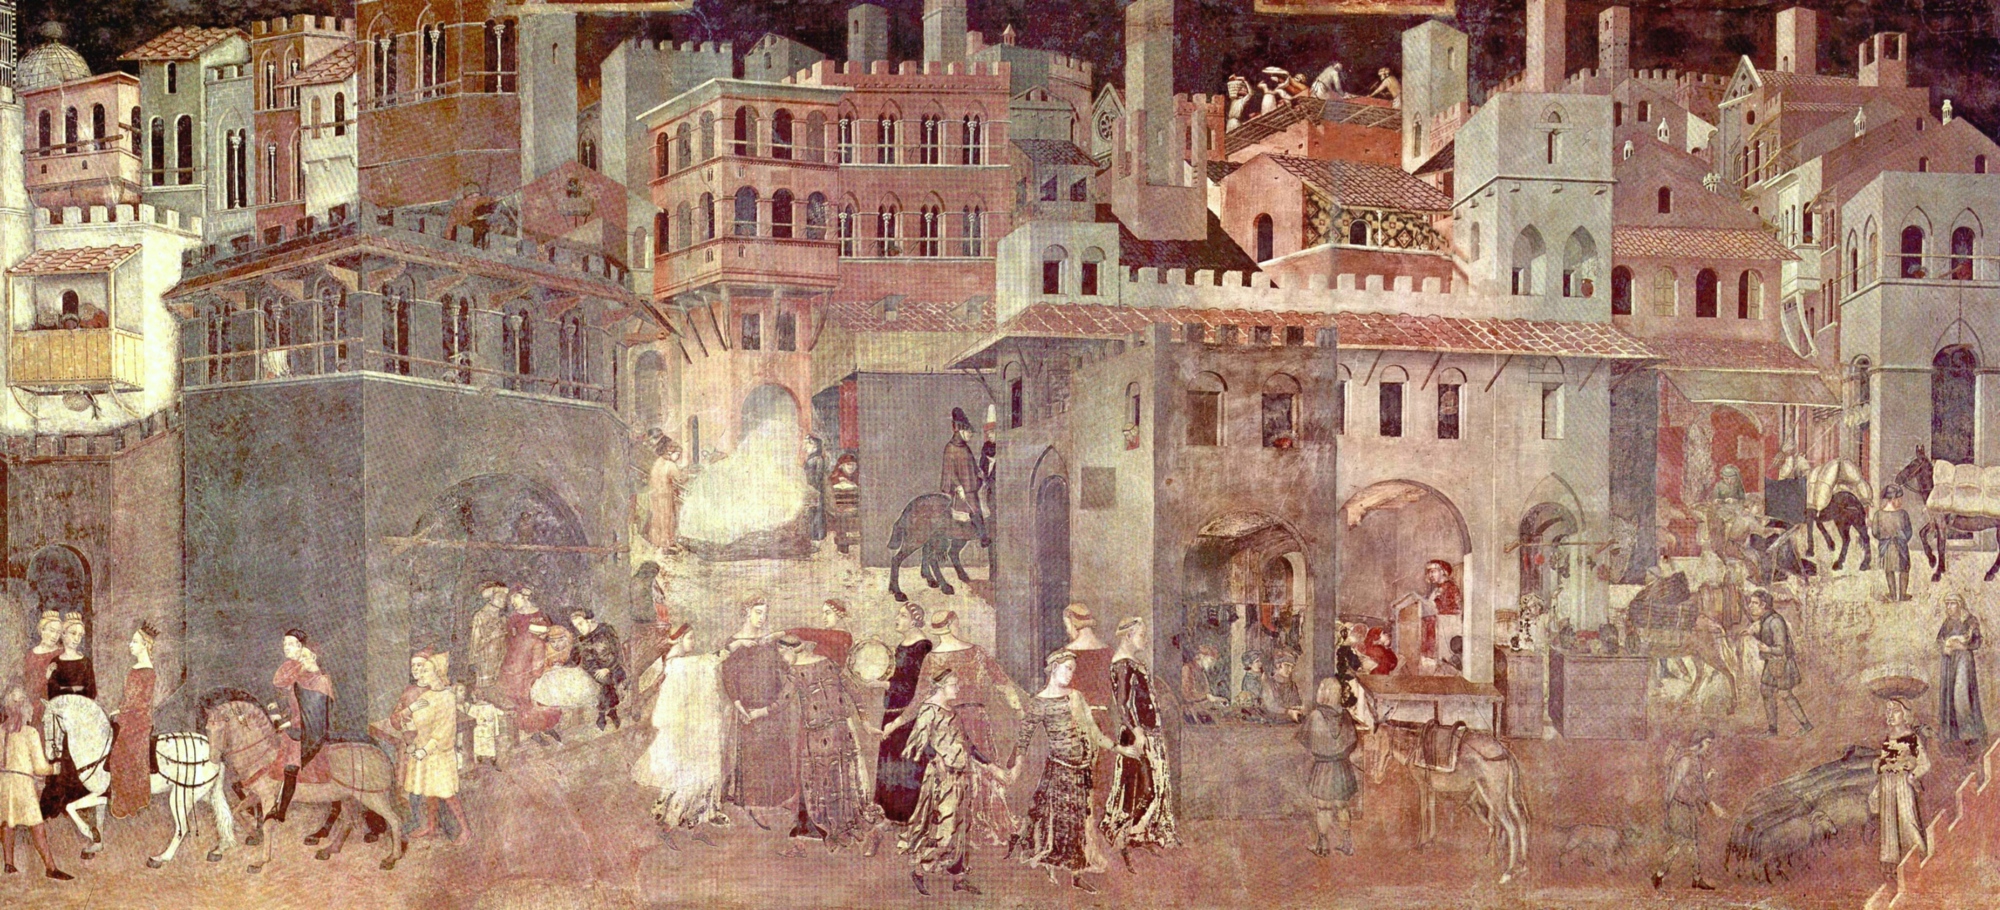 Buon governo: un'opera del geniale Ambrogio Lorenzetti e figlia dell'humus culturale della Siena trecentesca